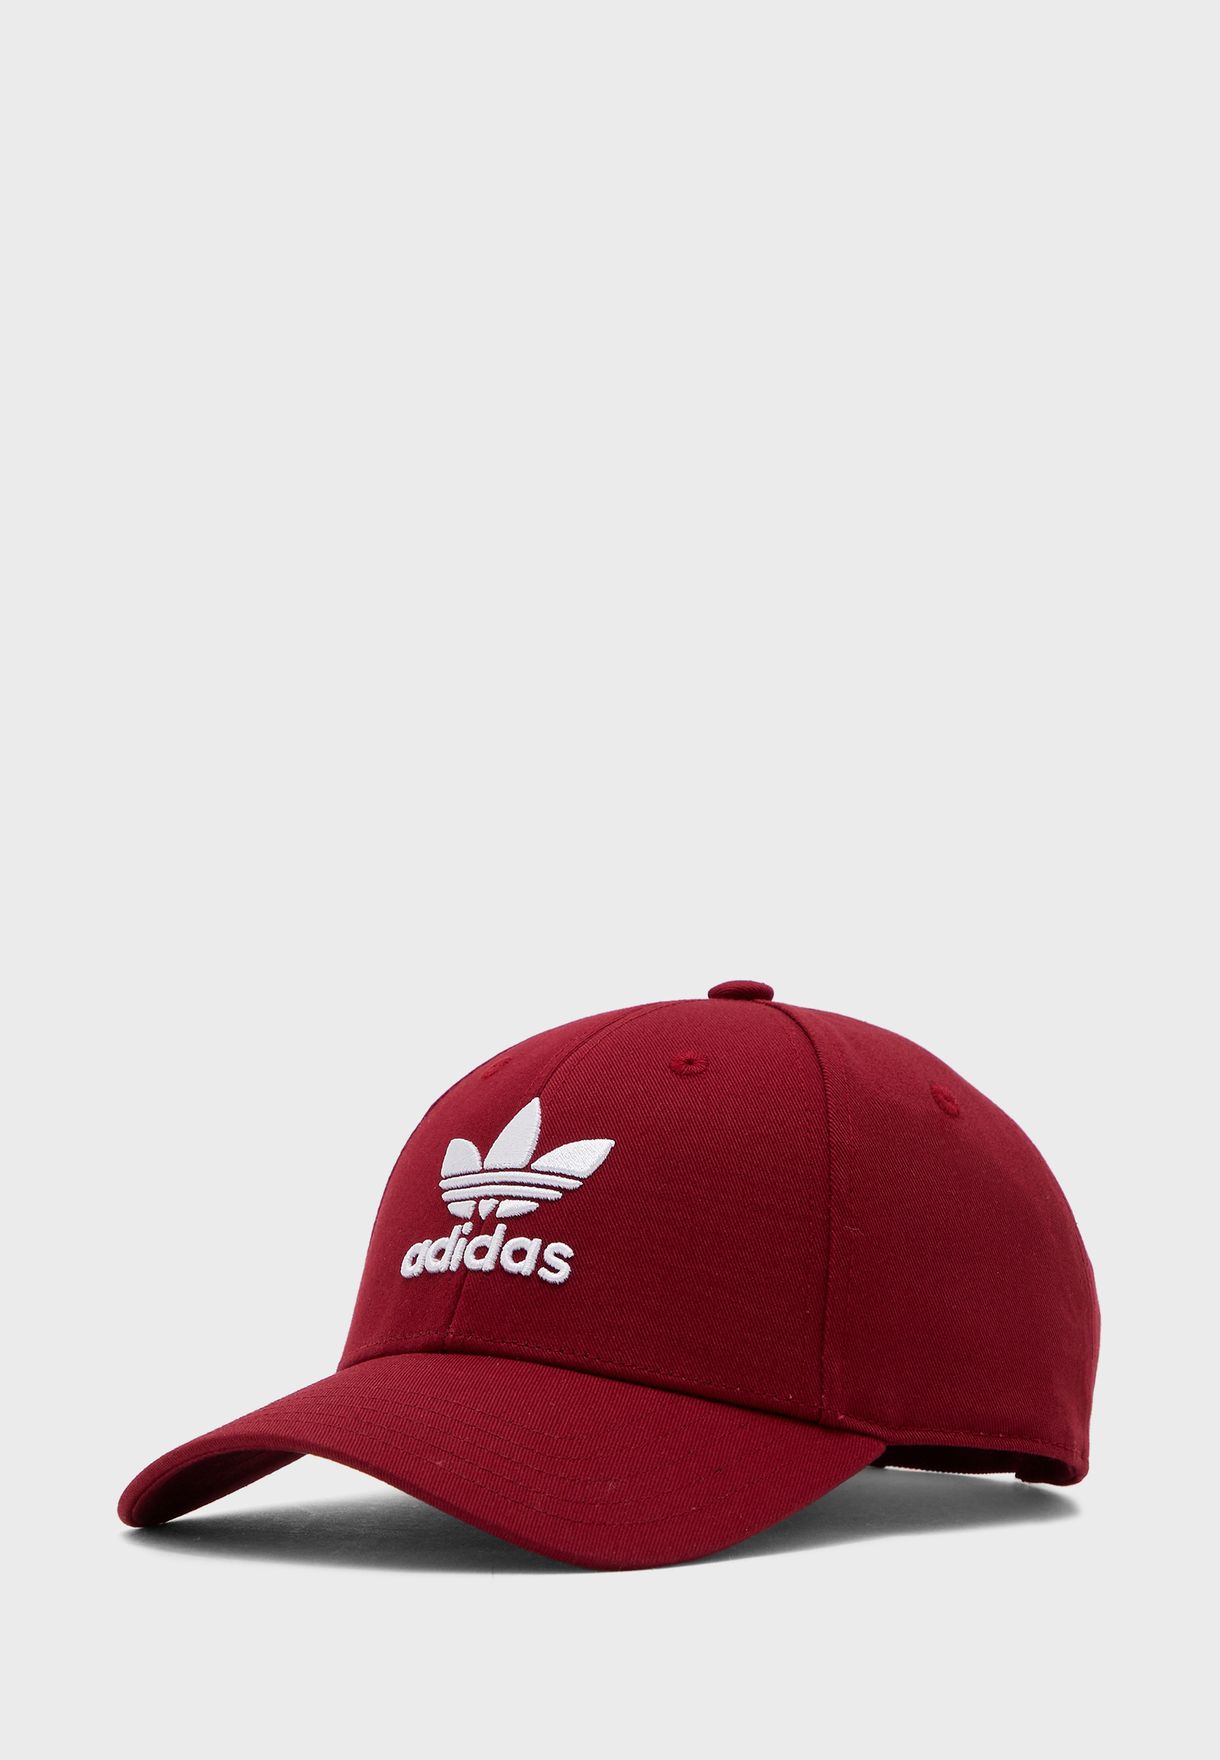 adidas classic trefoil cap